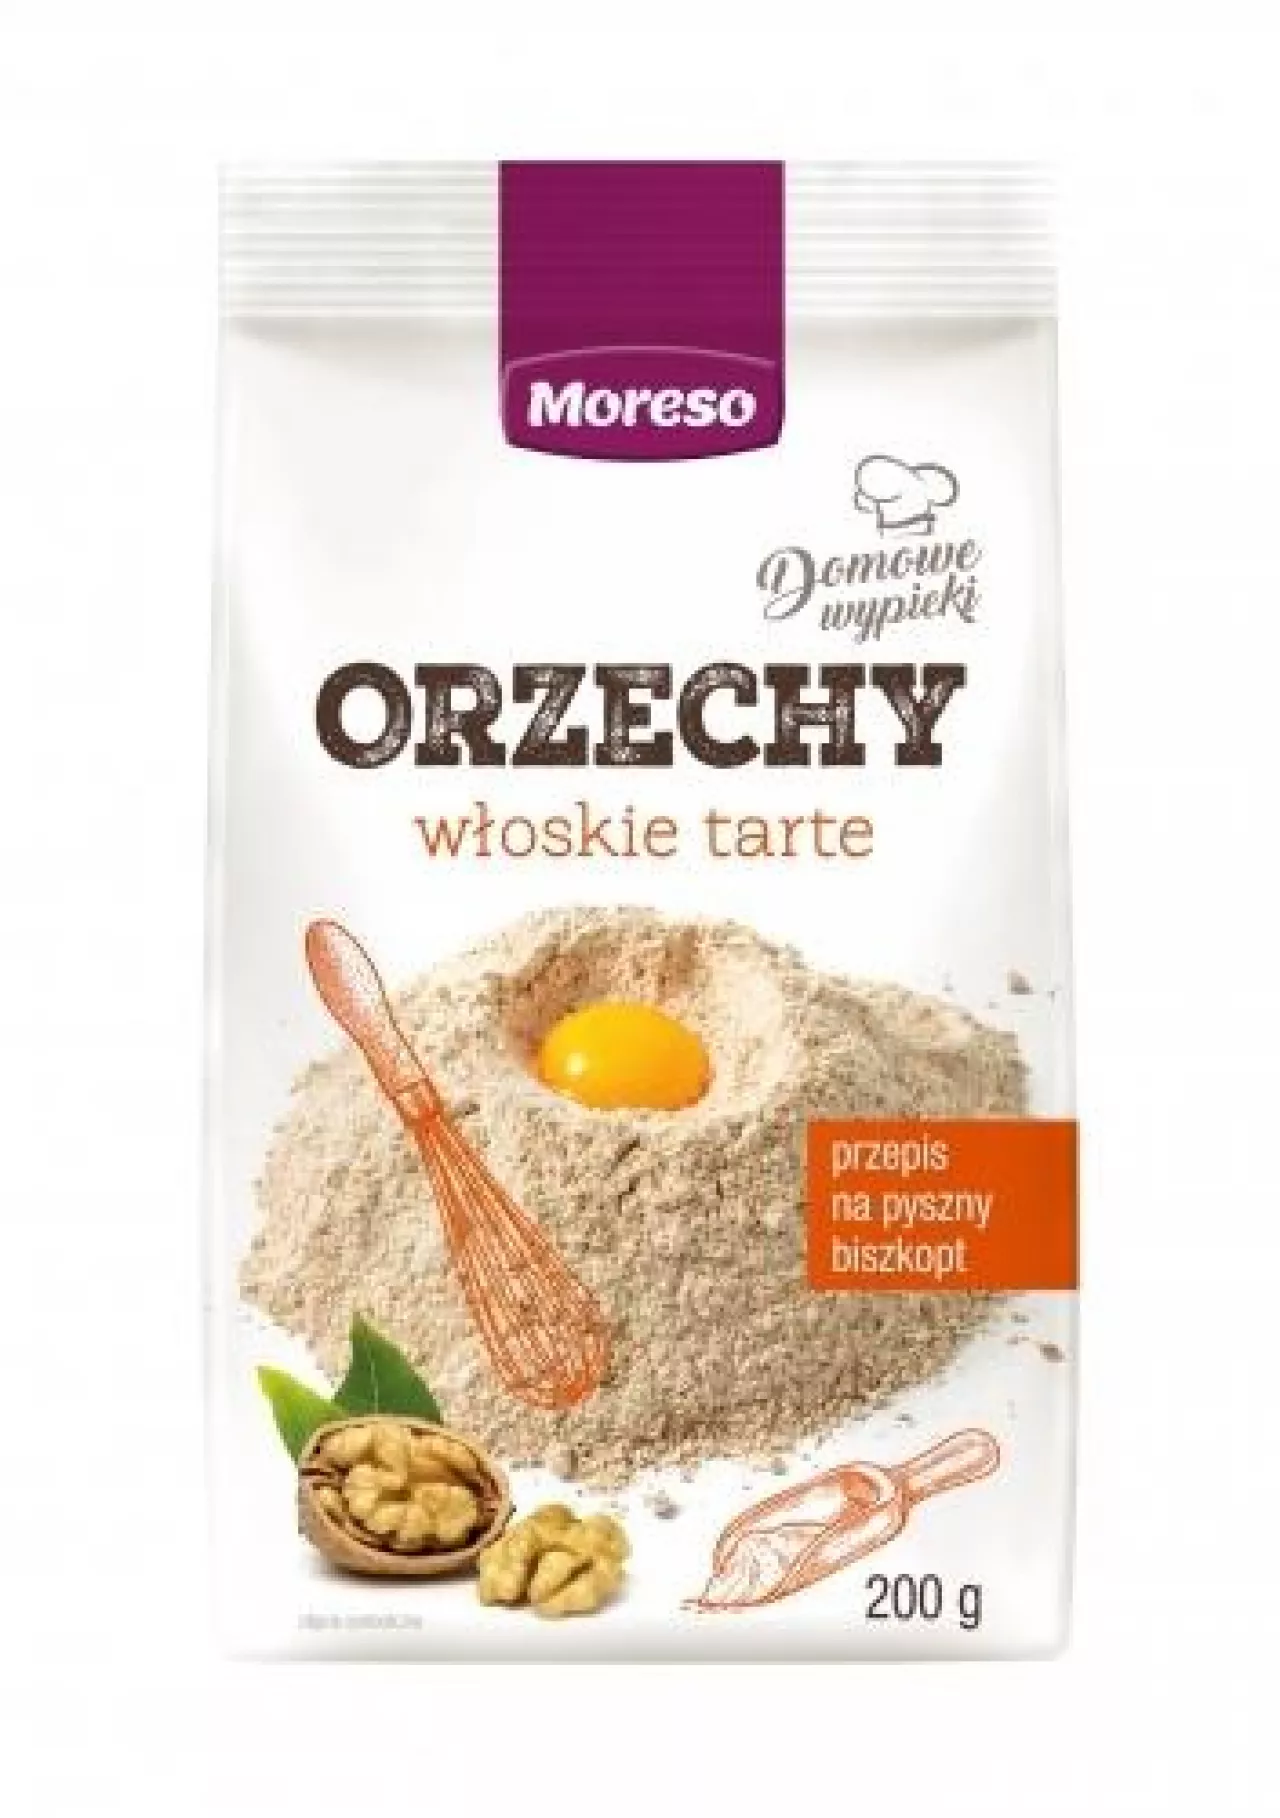 Migdały tarte (200 g) („Domowe wypieki” nowa linia produktów od Moreso)